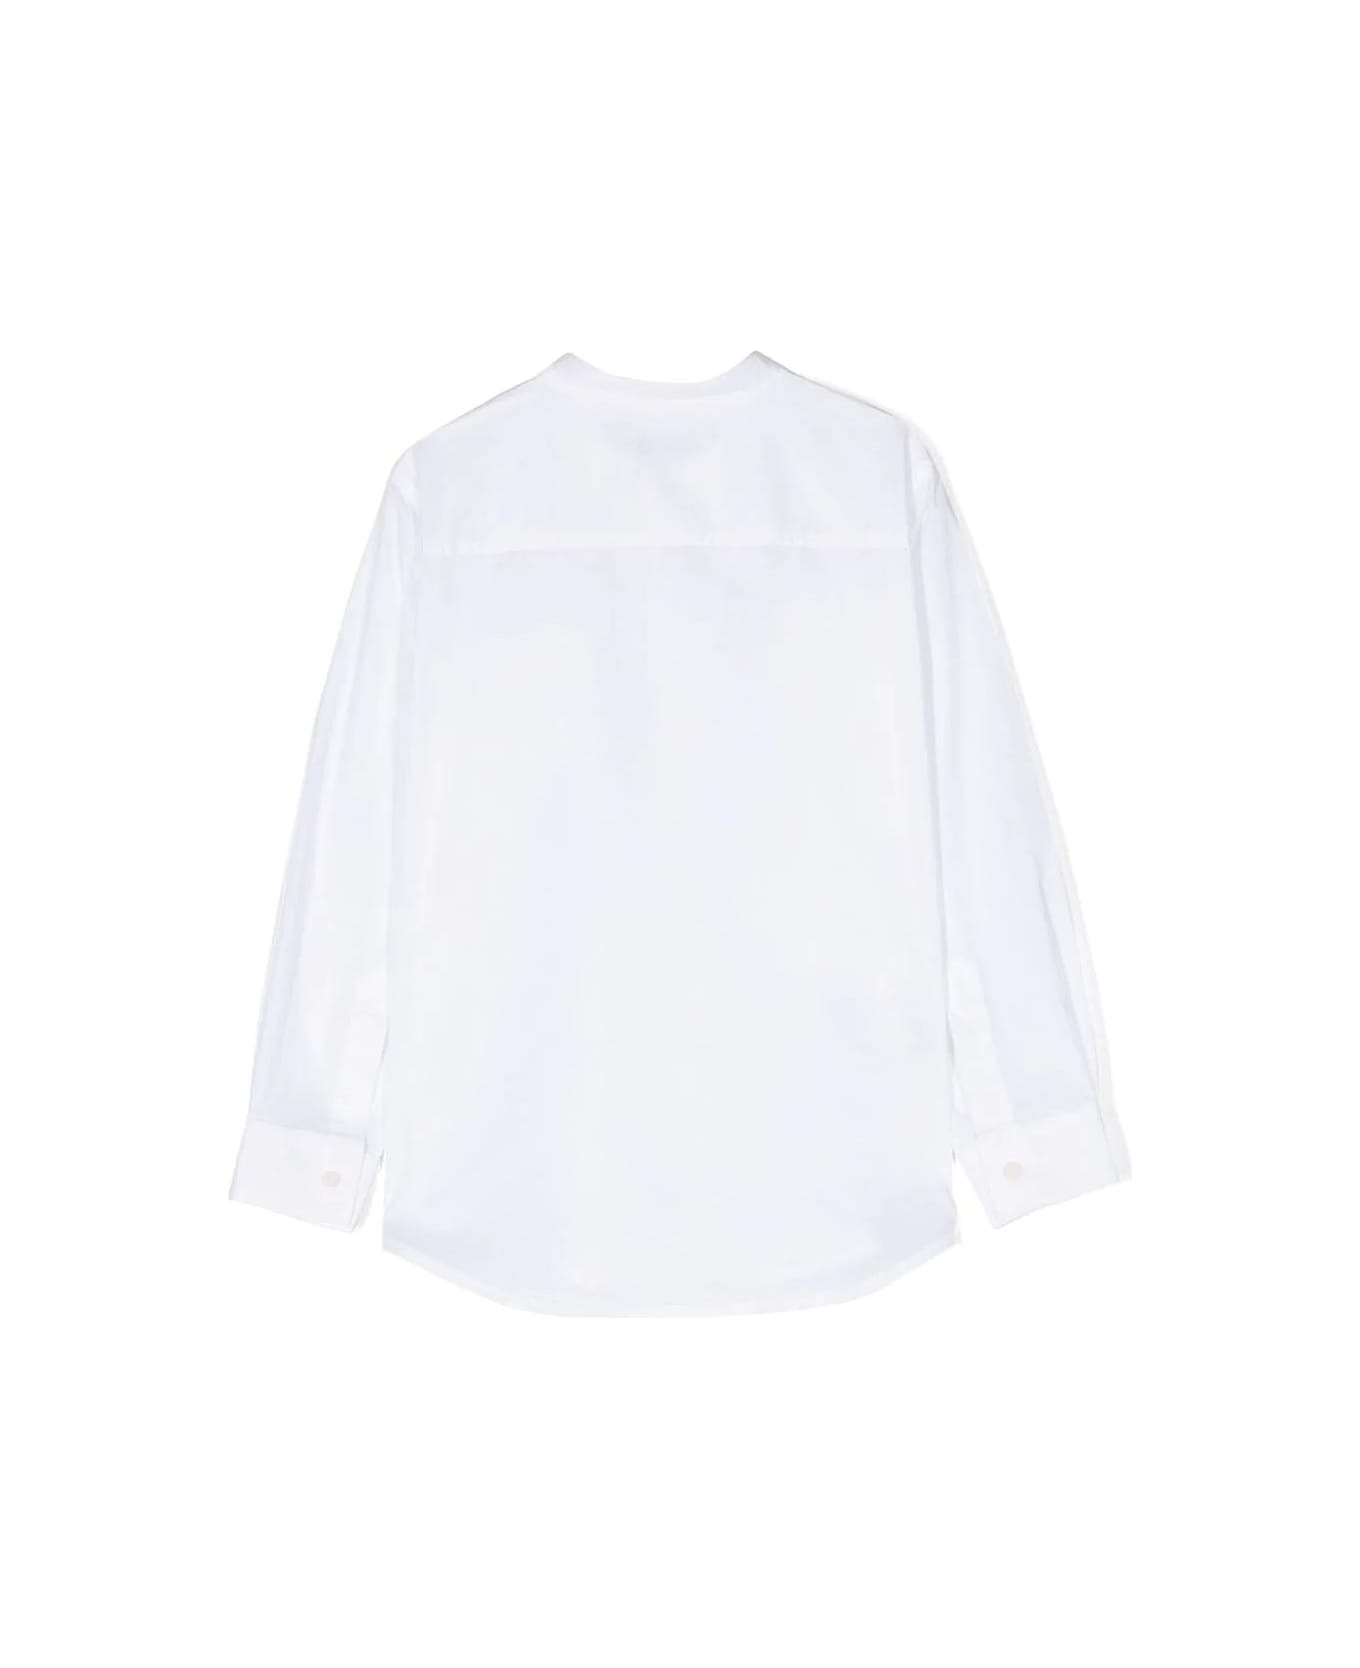 Il Gufo White Cotton Shirt - White